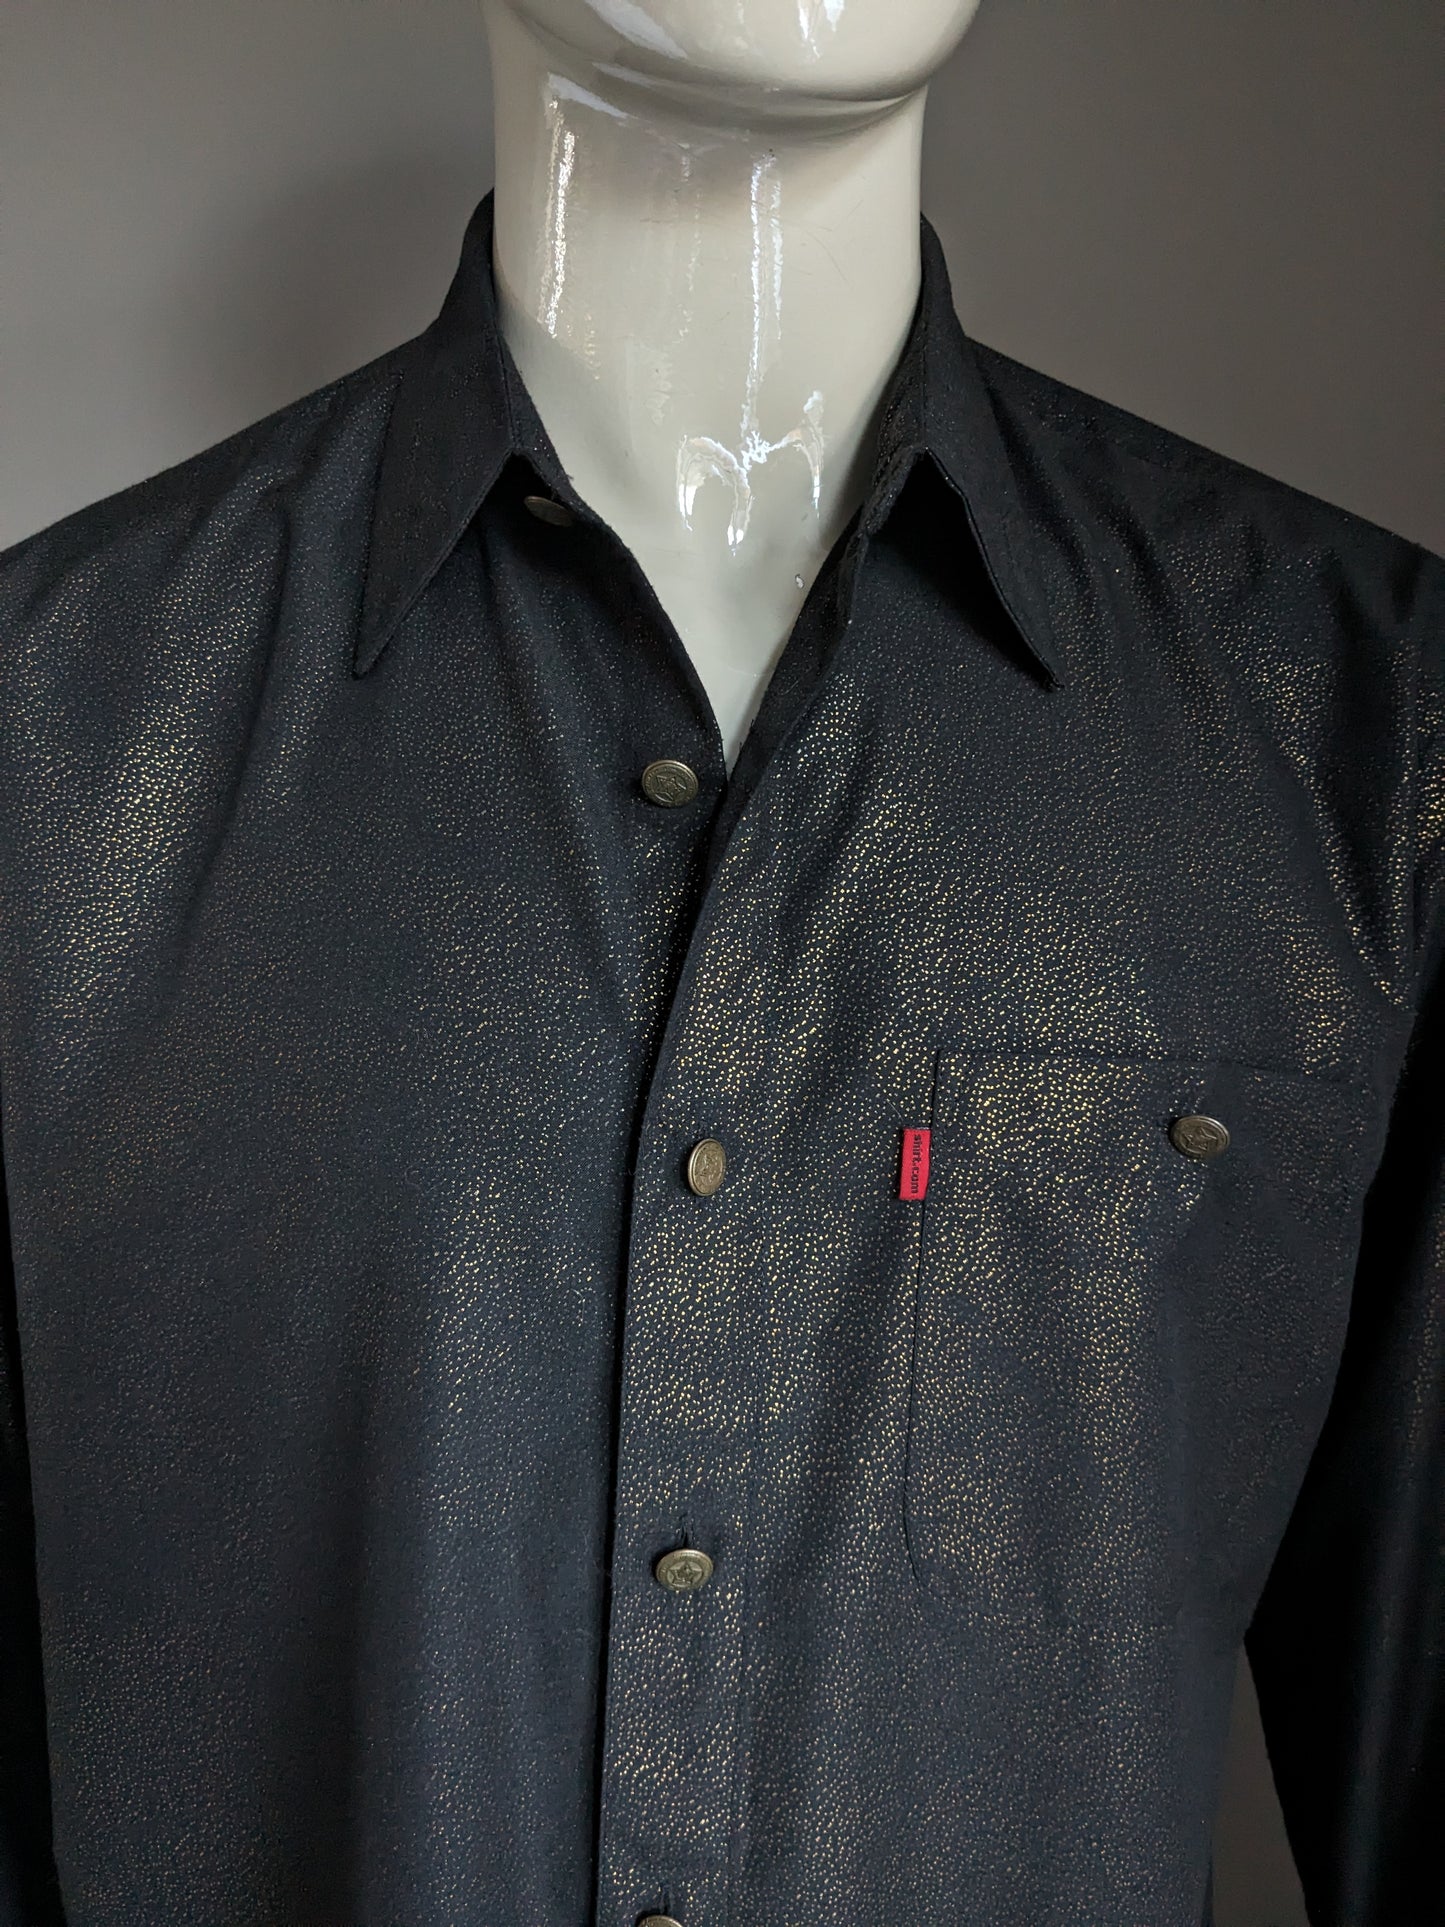 Shirt.com Shirt. Black Gold -colorato punteggiato. Bei pulsanti. Dimensione XL / XXL-2XL.